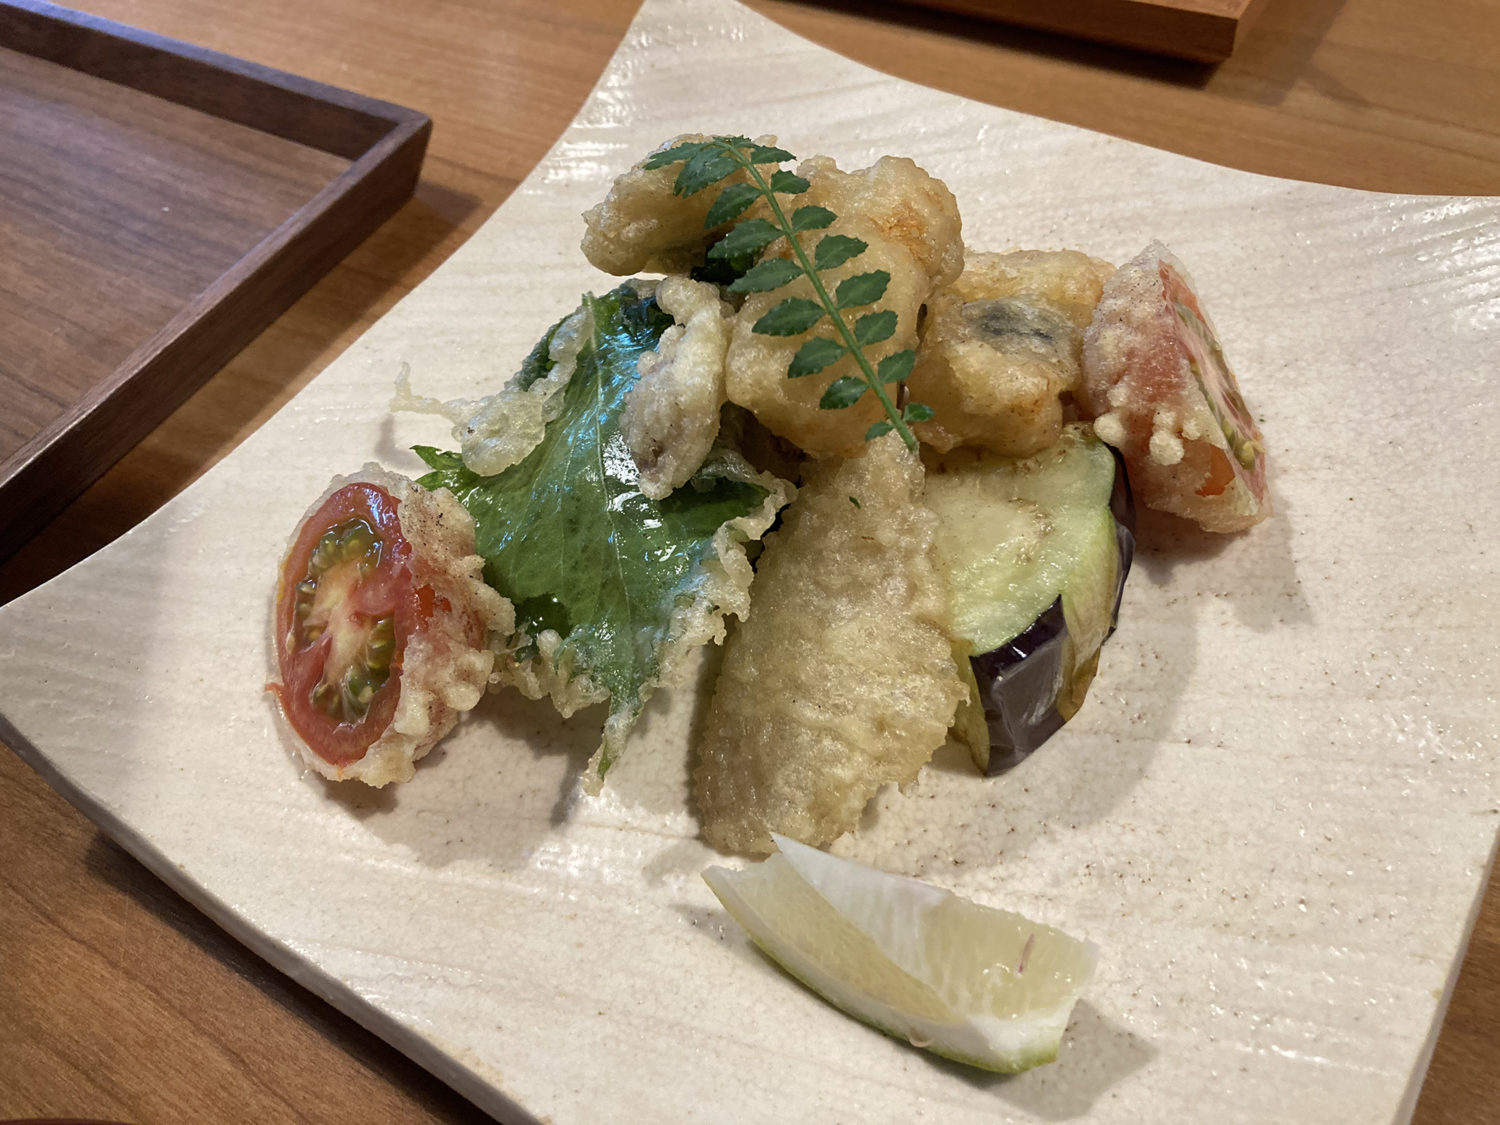 工房レストラン「wakuden MORI」
うなぎの天ぷら